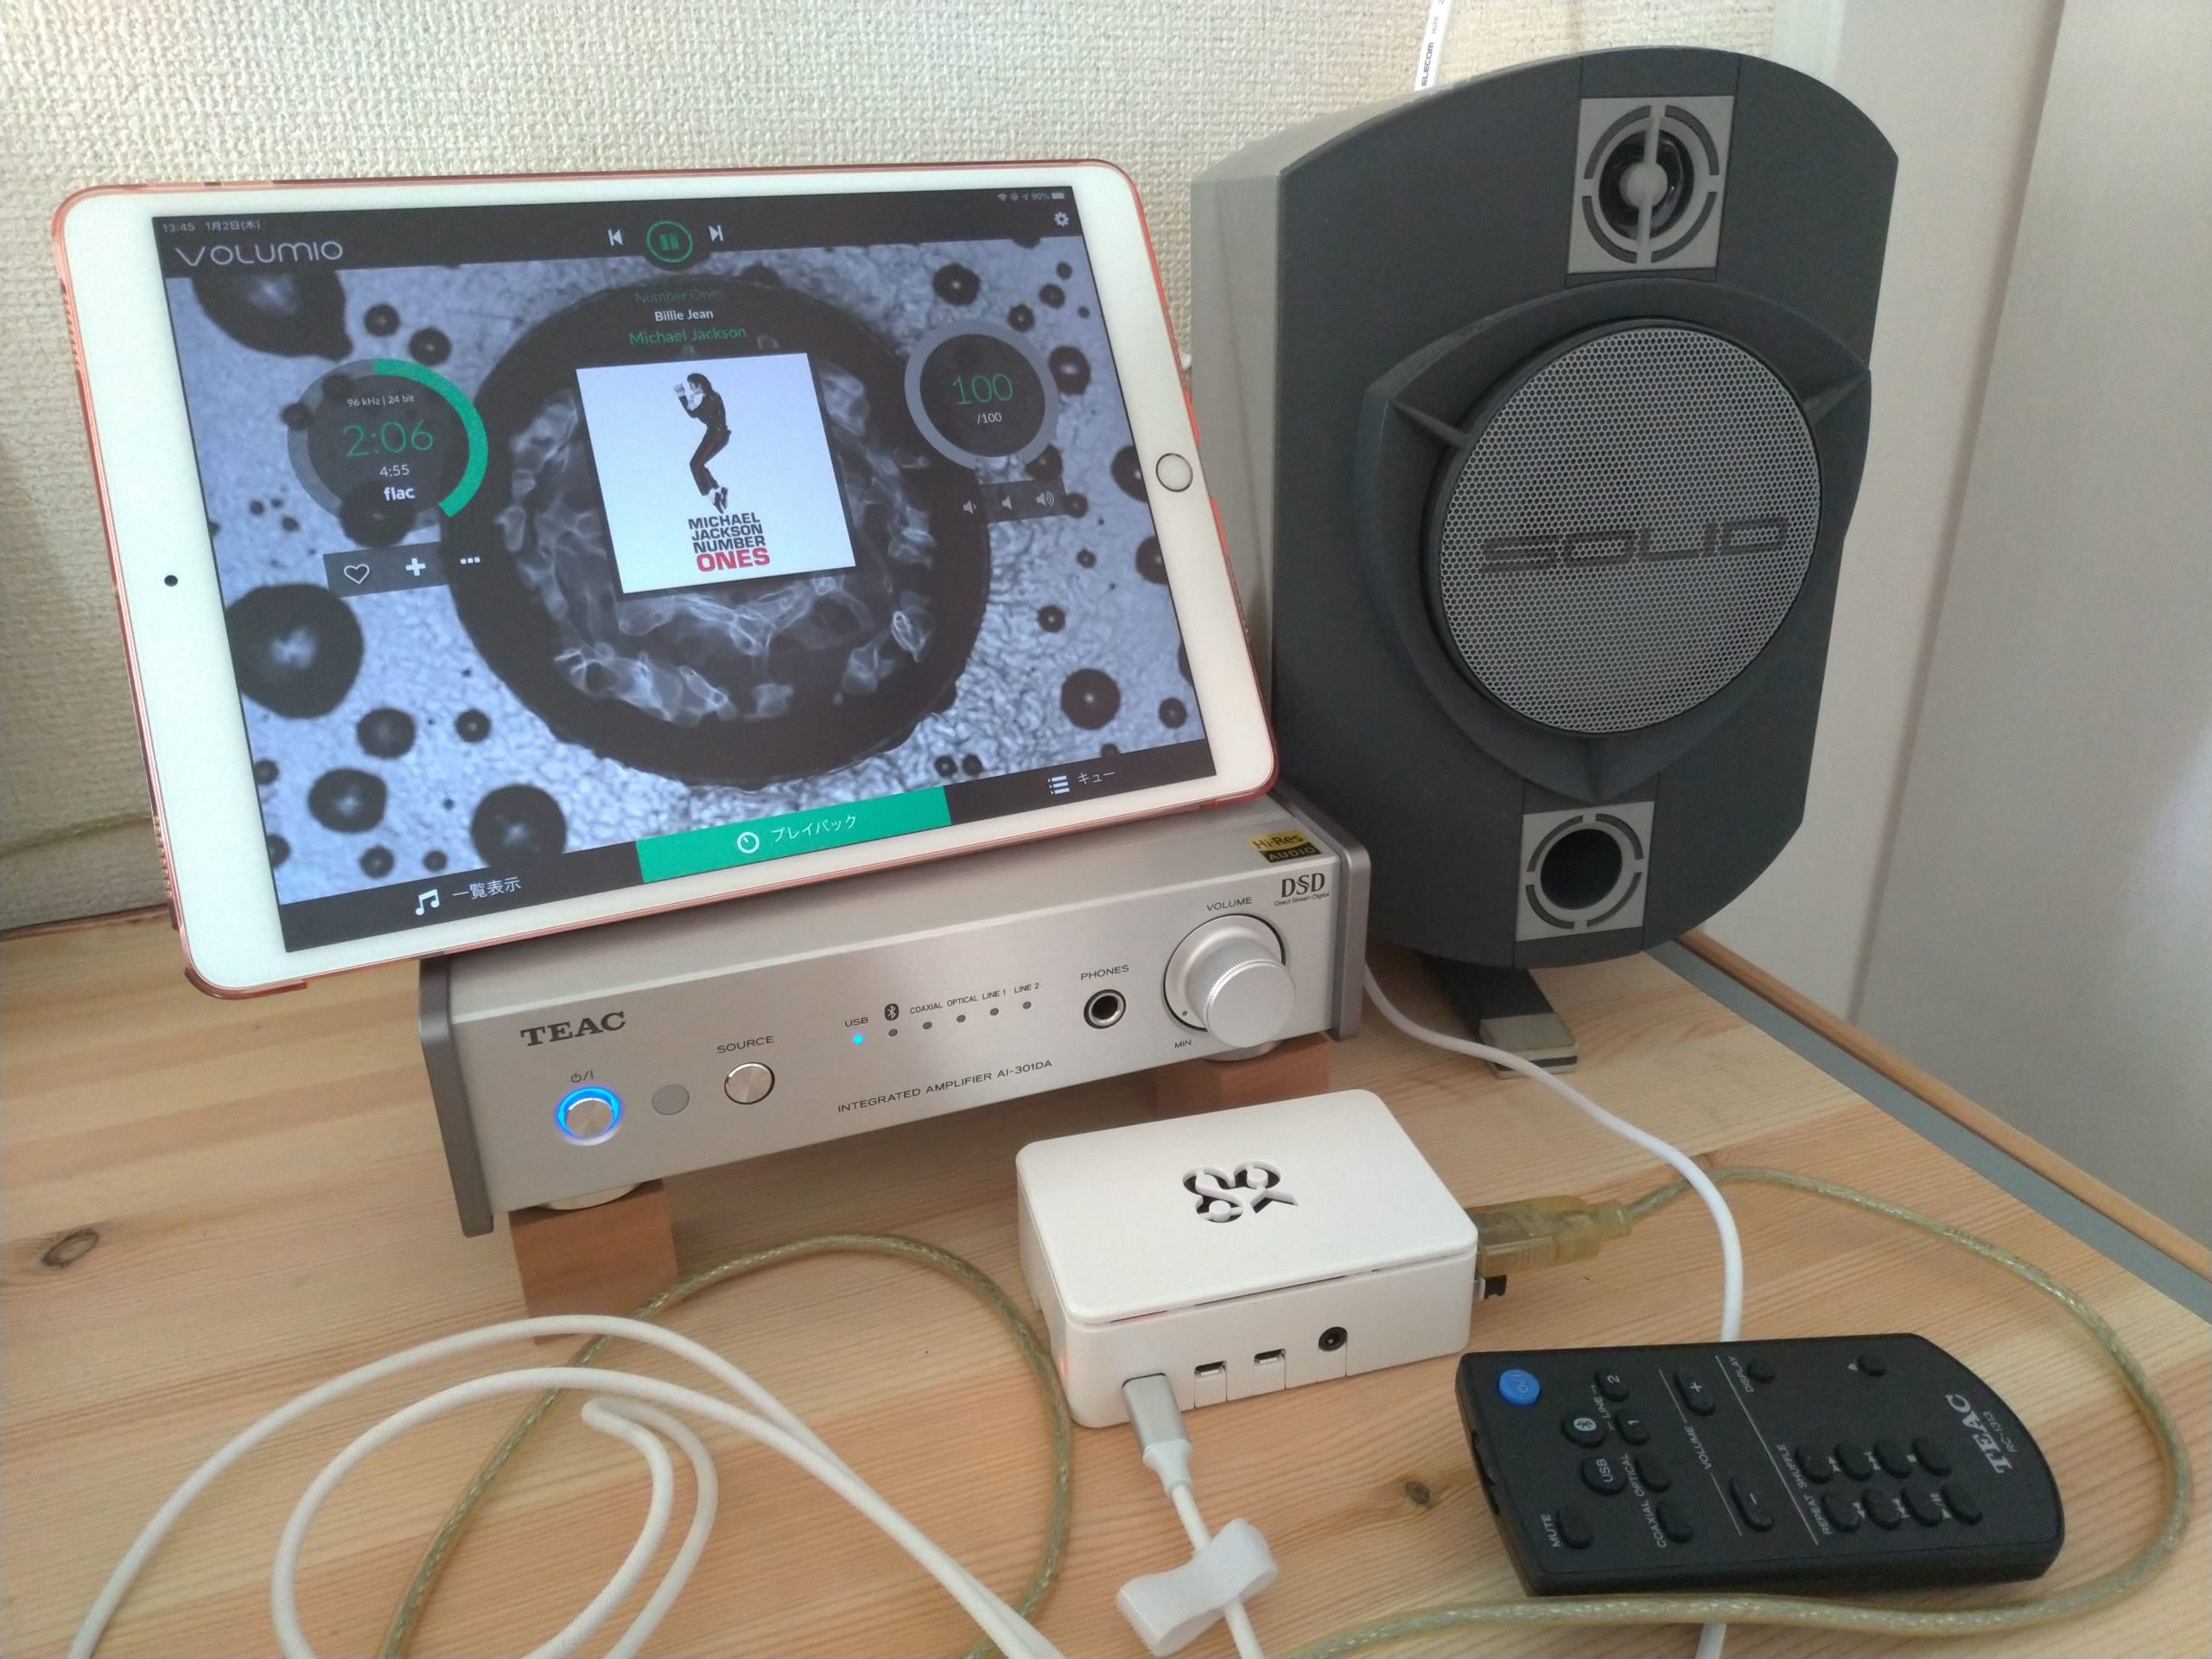 Raspberry Piを使ってミュージックサーバを作ってみました